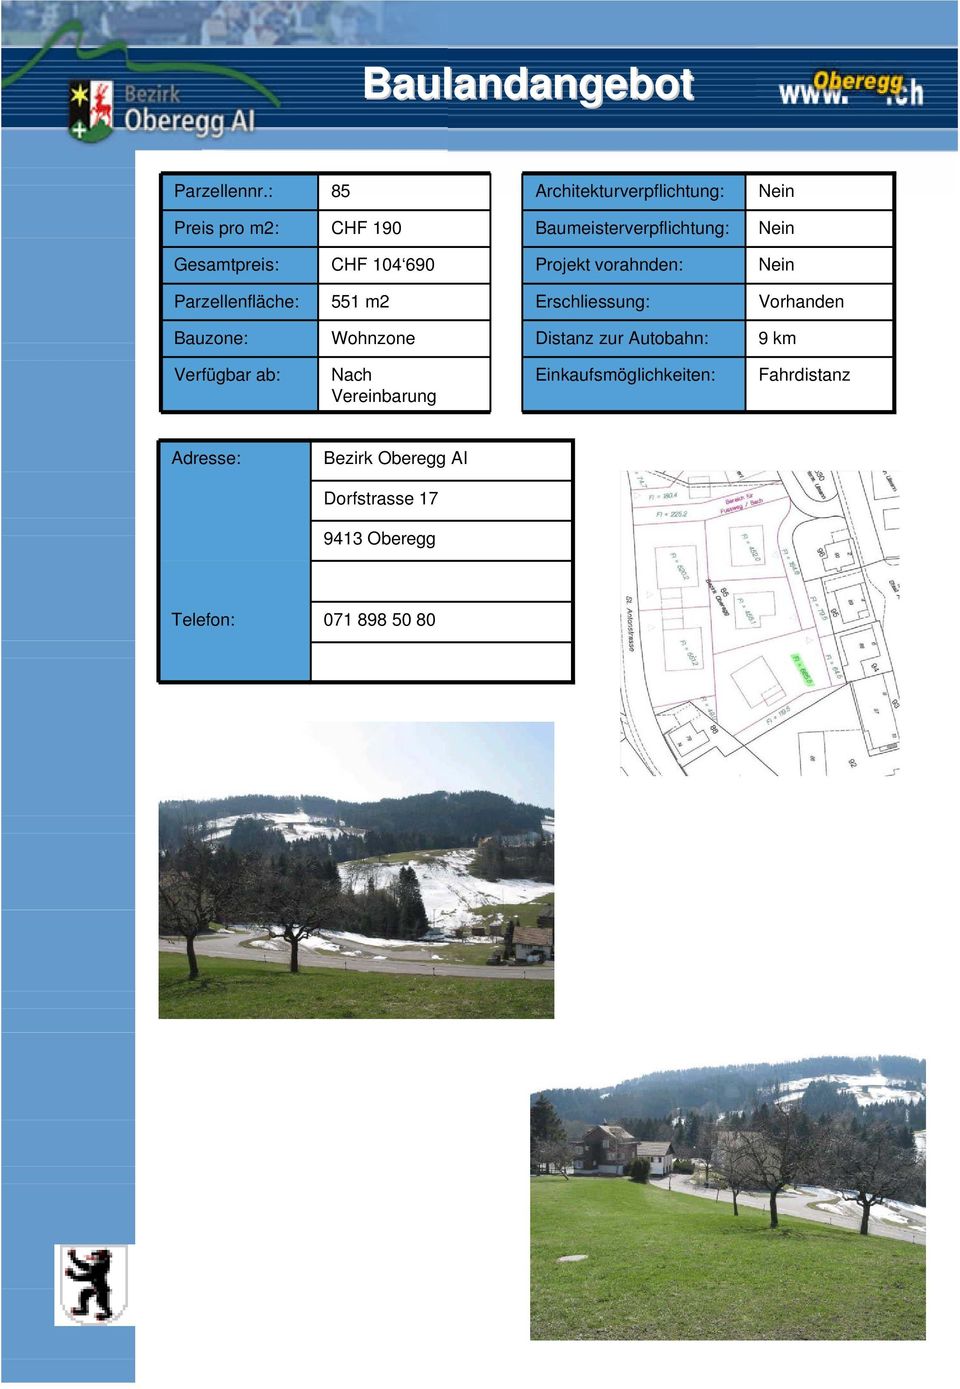 104 690 Projekt vorahnden: Parzellenfläche: 551 m2 Erschliessung: Vorhanden Bauzone: Wohnzone